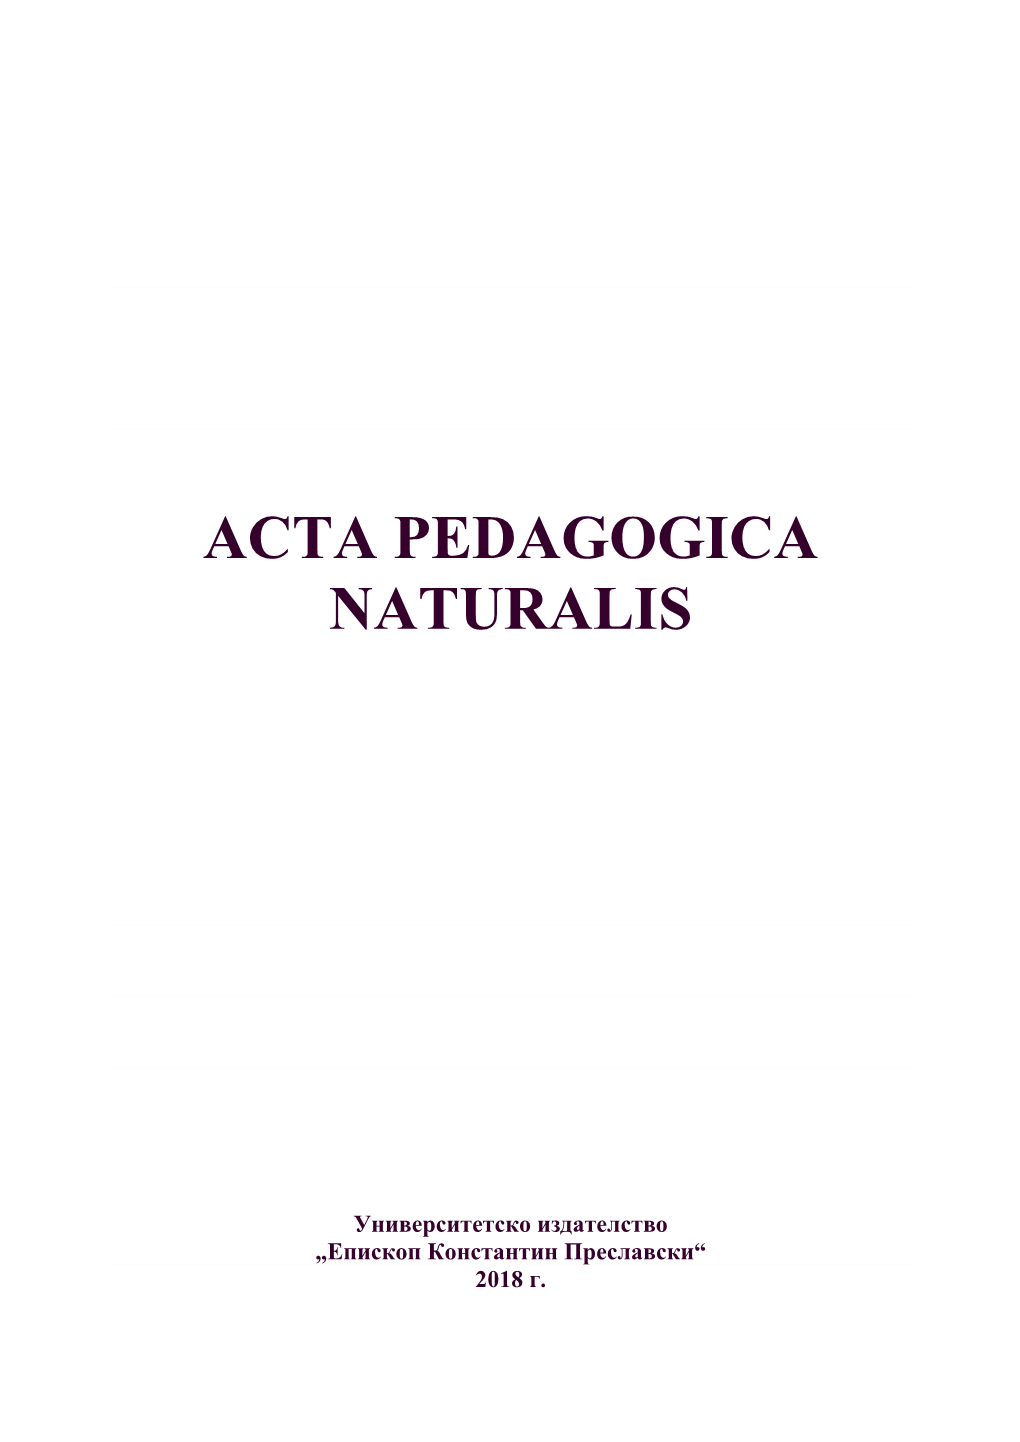 Acta Pedagogica Naturalis'2018